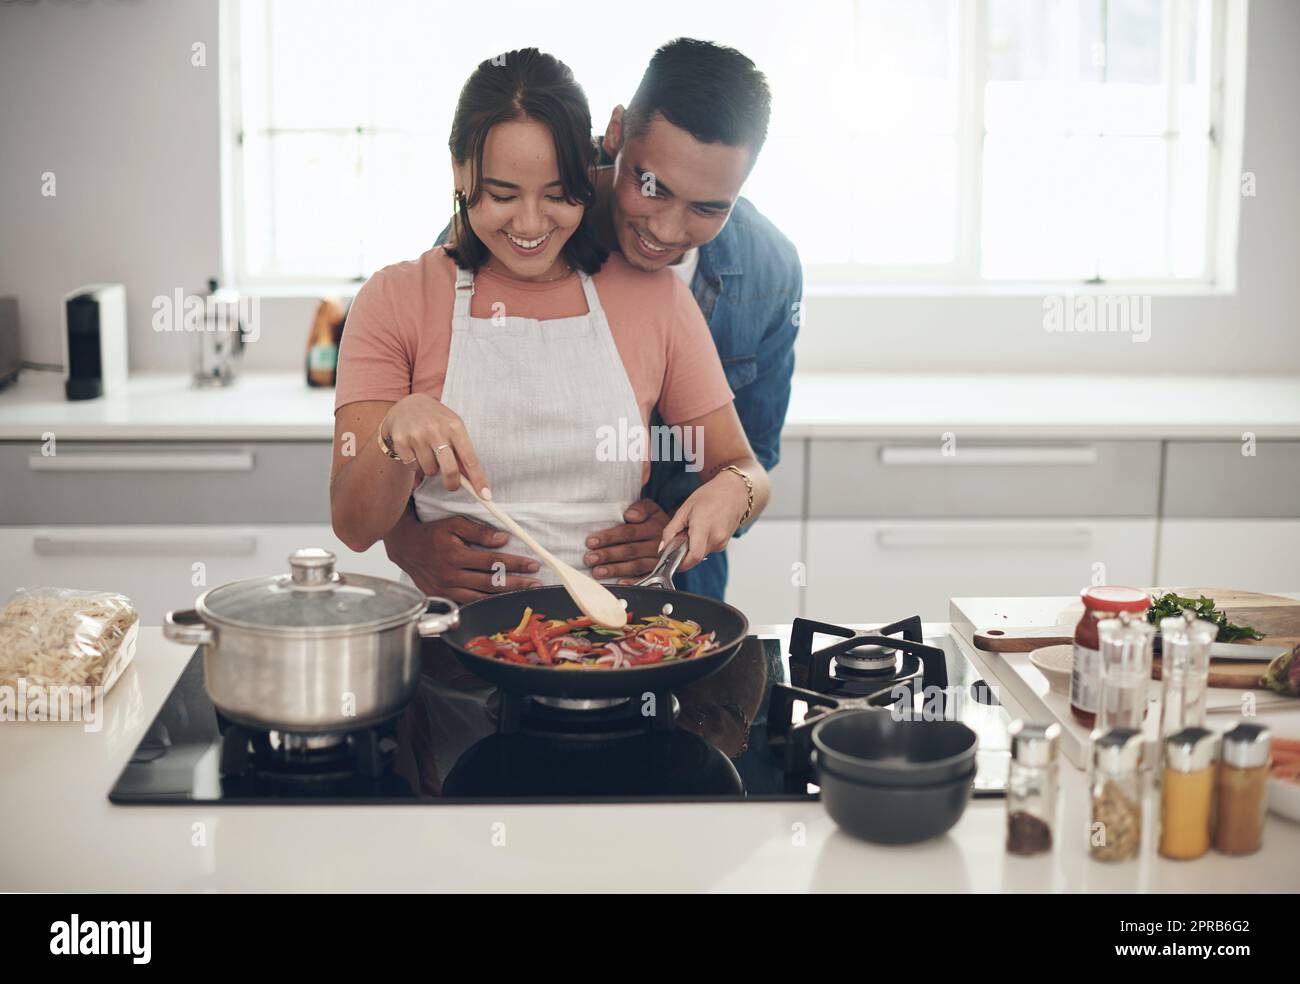 Gutes Essen hält sie glücklich. Ein junges Paar kocht zusammen zu Hause. Stockfoto